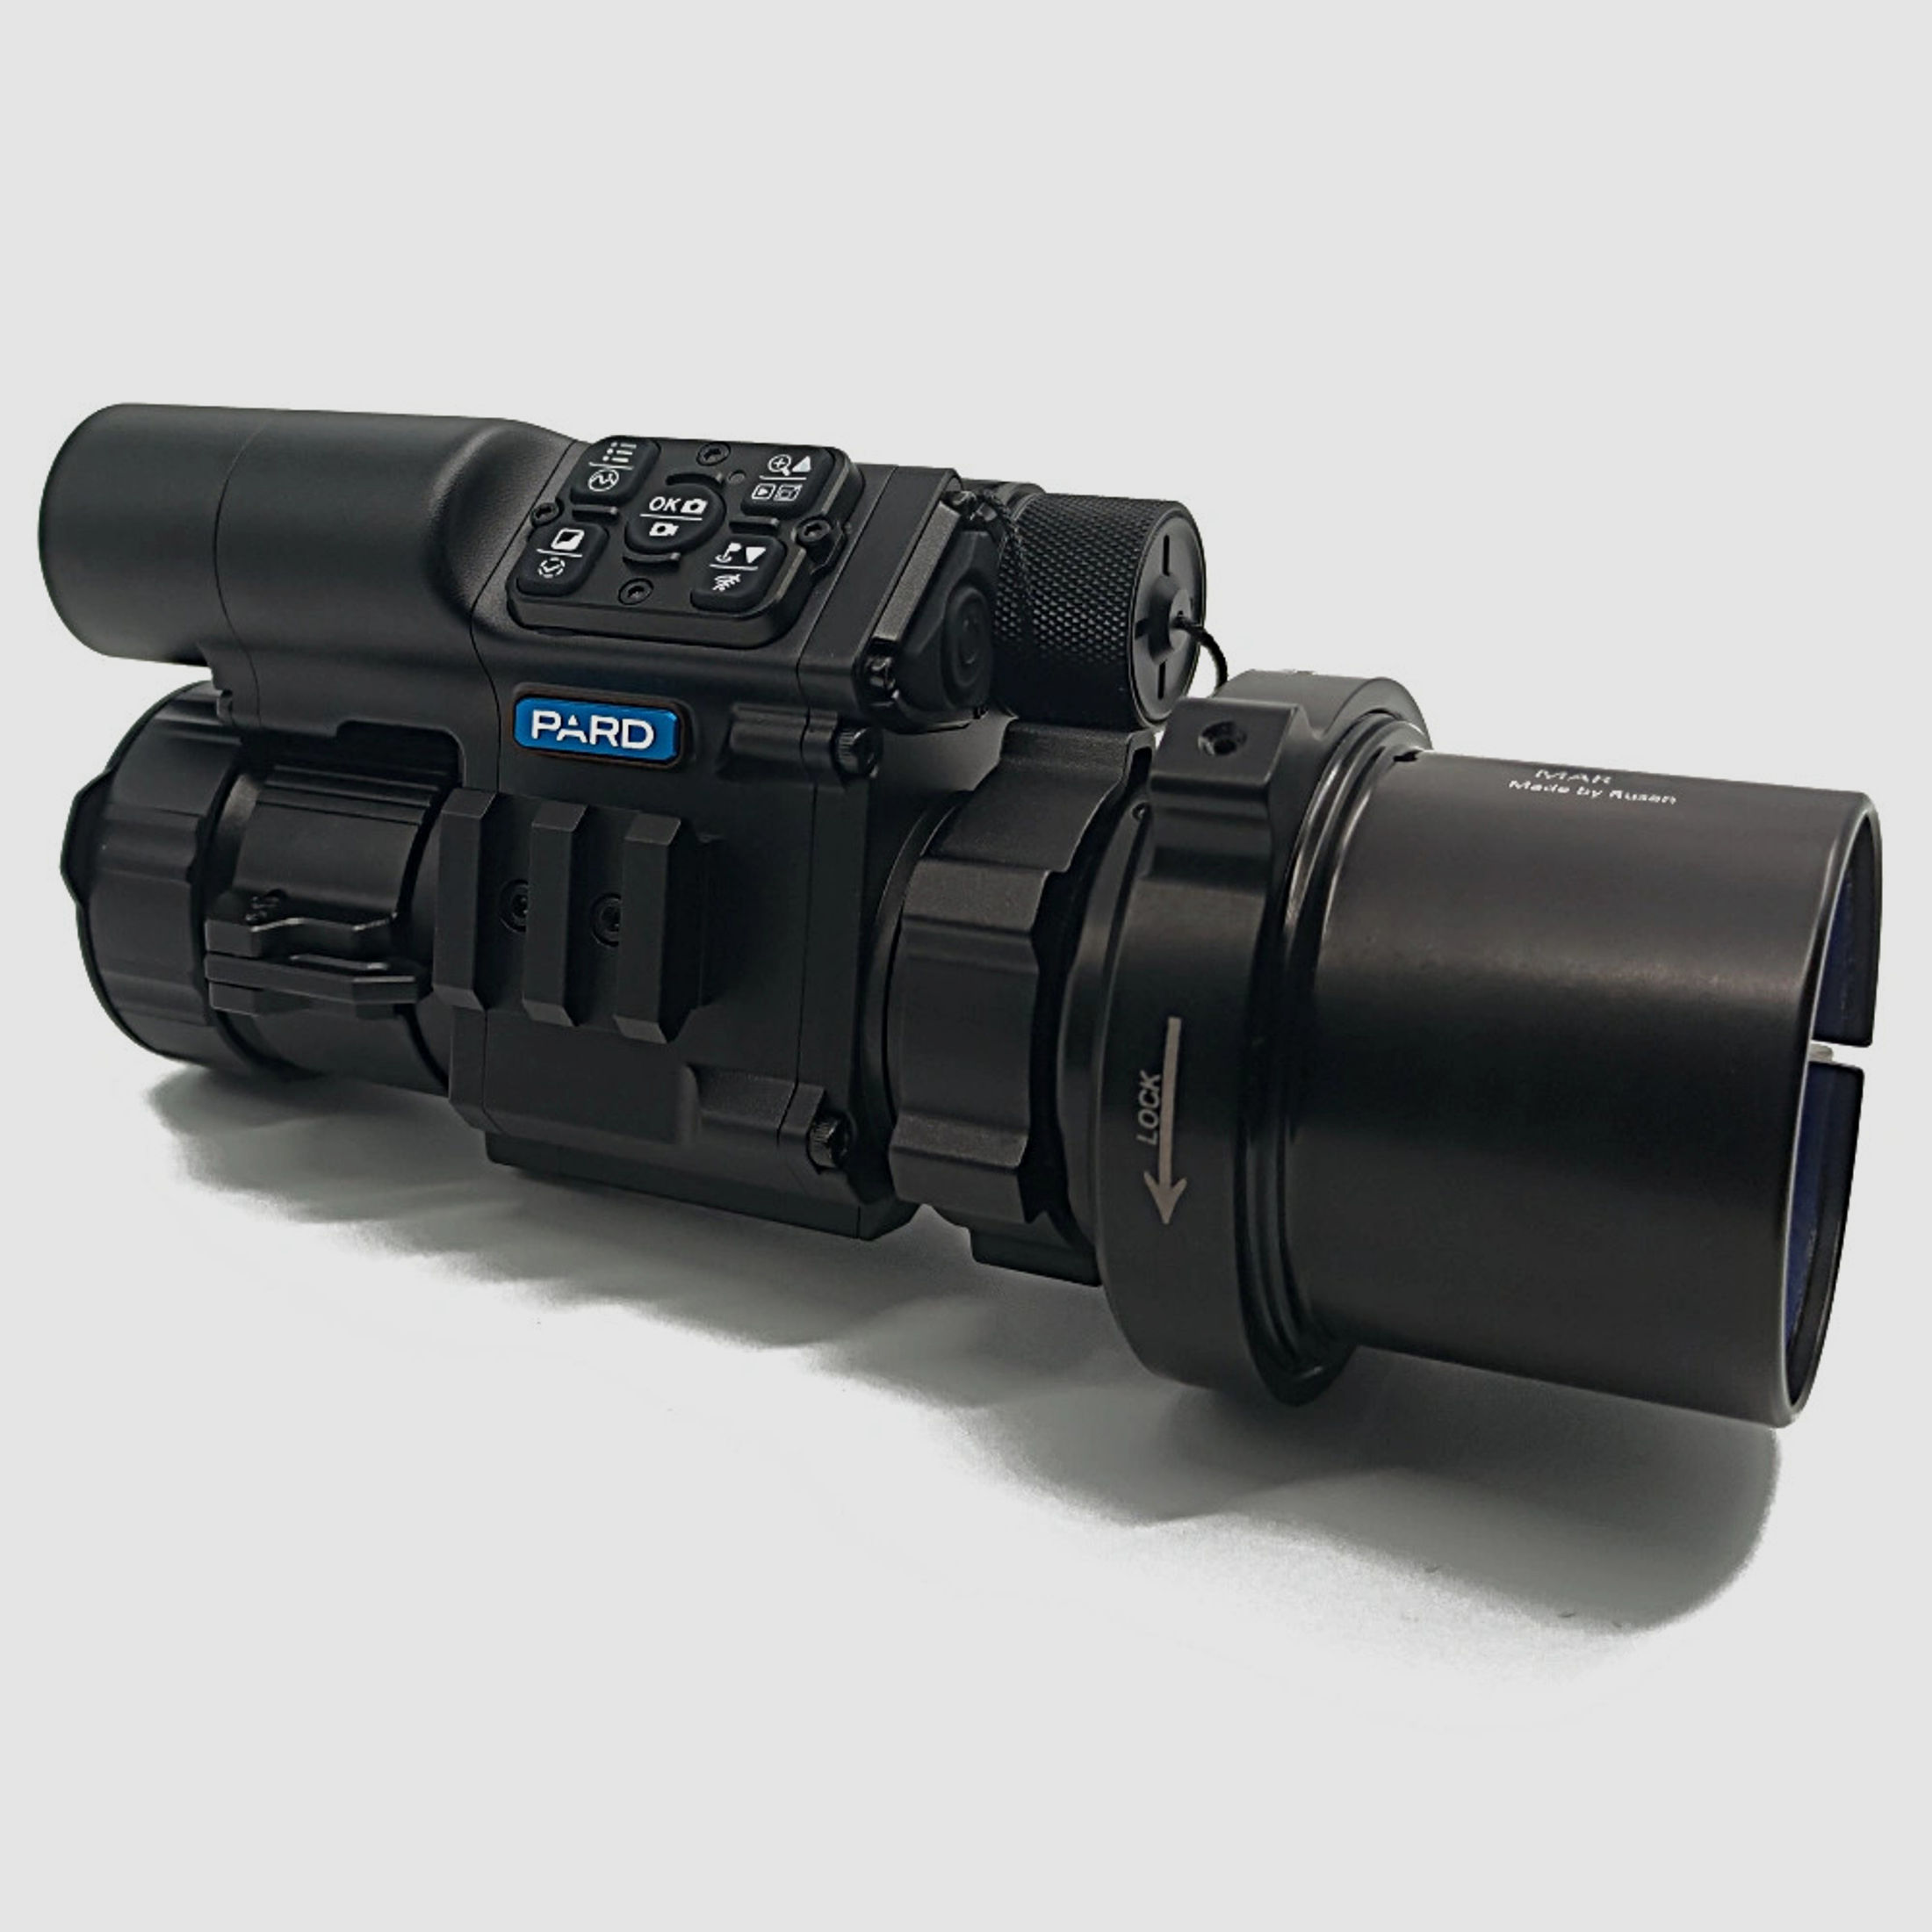 PARD FD1 Nachtsicht 3 in 1 Vorsatz, Monokular & Zielfernrohr - 940 nm mit LRF 30 mm RUSAN MAR + RUSAN MCR